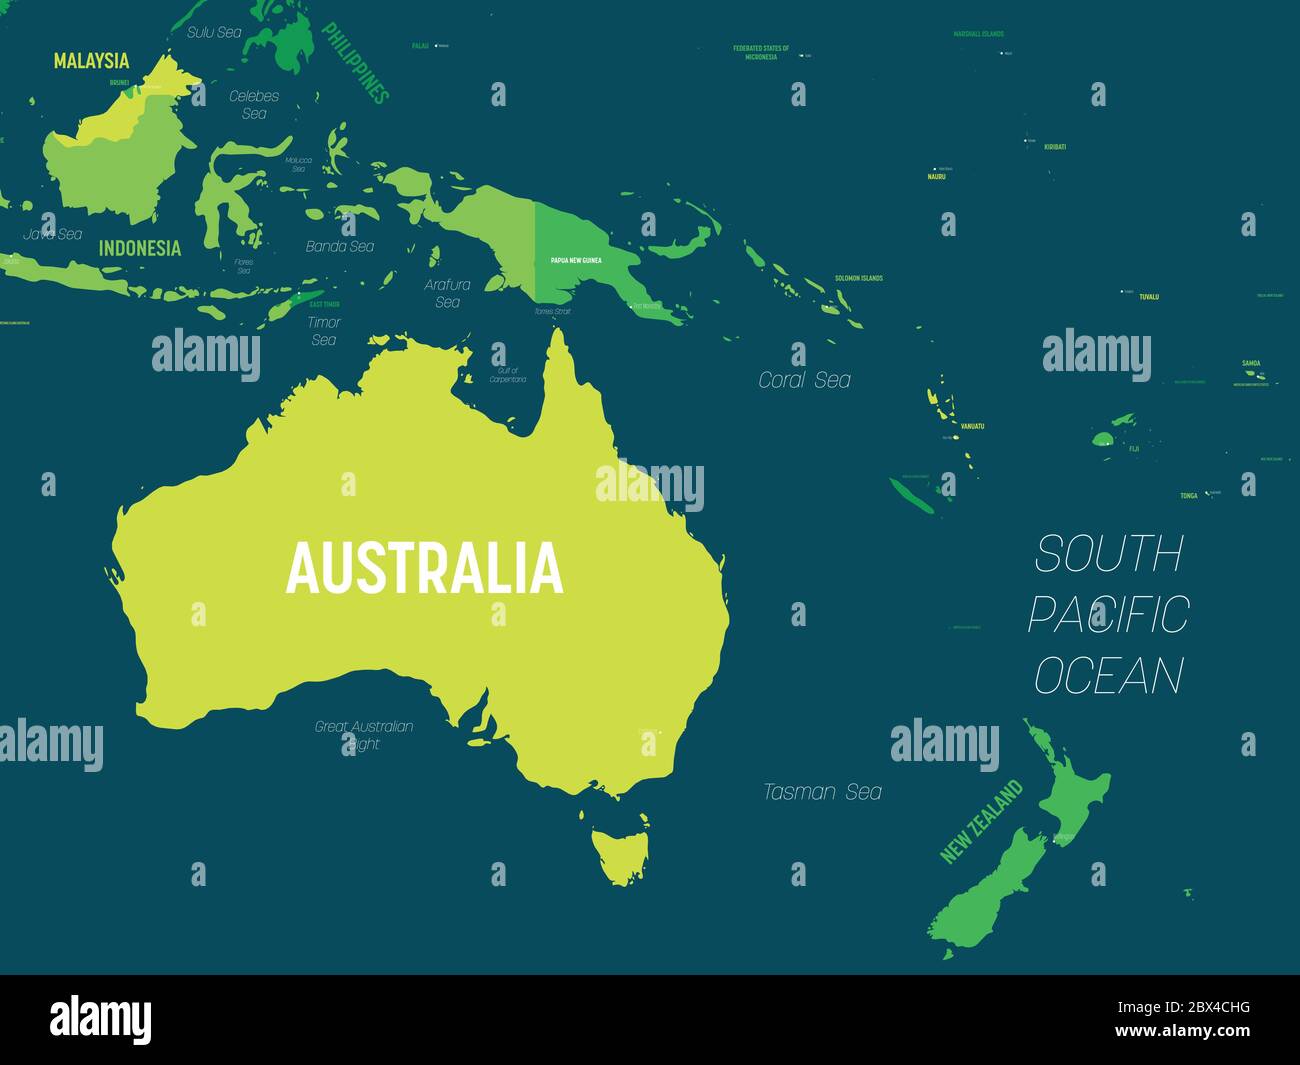 Australien und Ozeanien Karte - Grüntöne auf dunklem Hintergrund. Detaillierte politische Karte der australischen und pazifischen Region mit Land-, Kapital-, Meer- und Meeresnamen. Stock Vektor